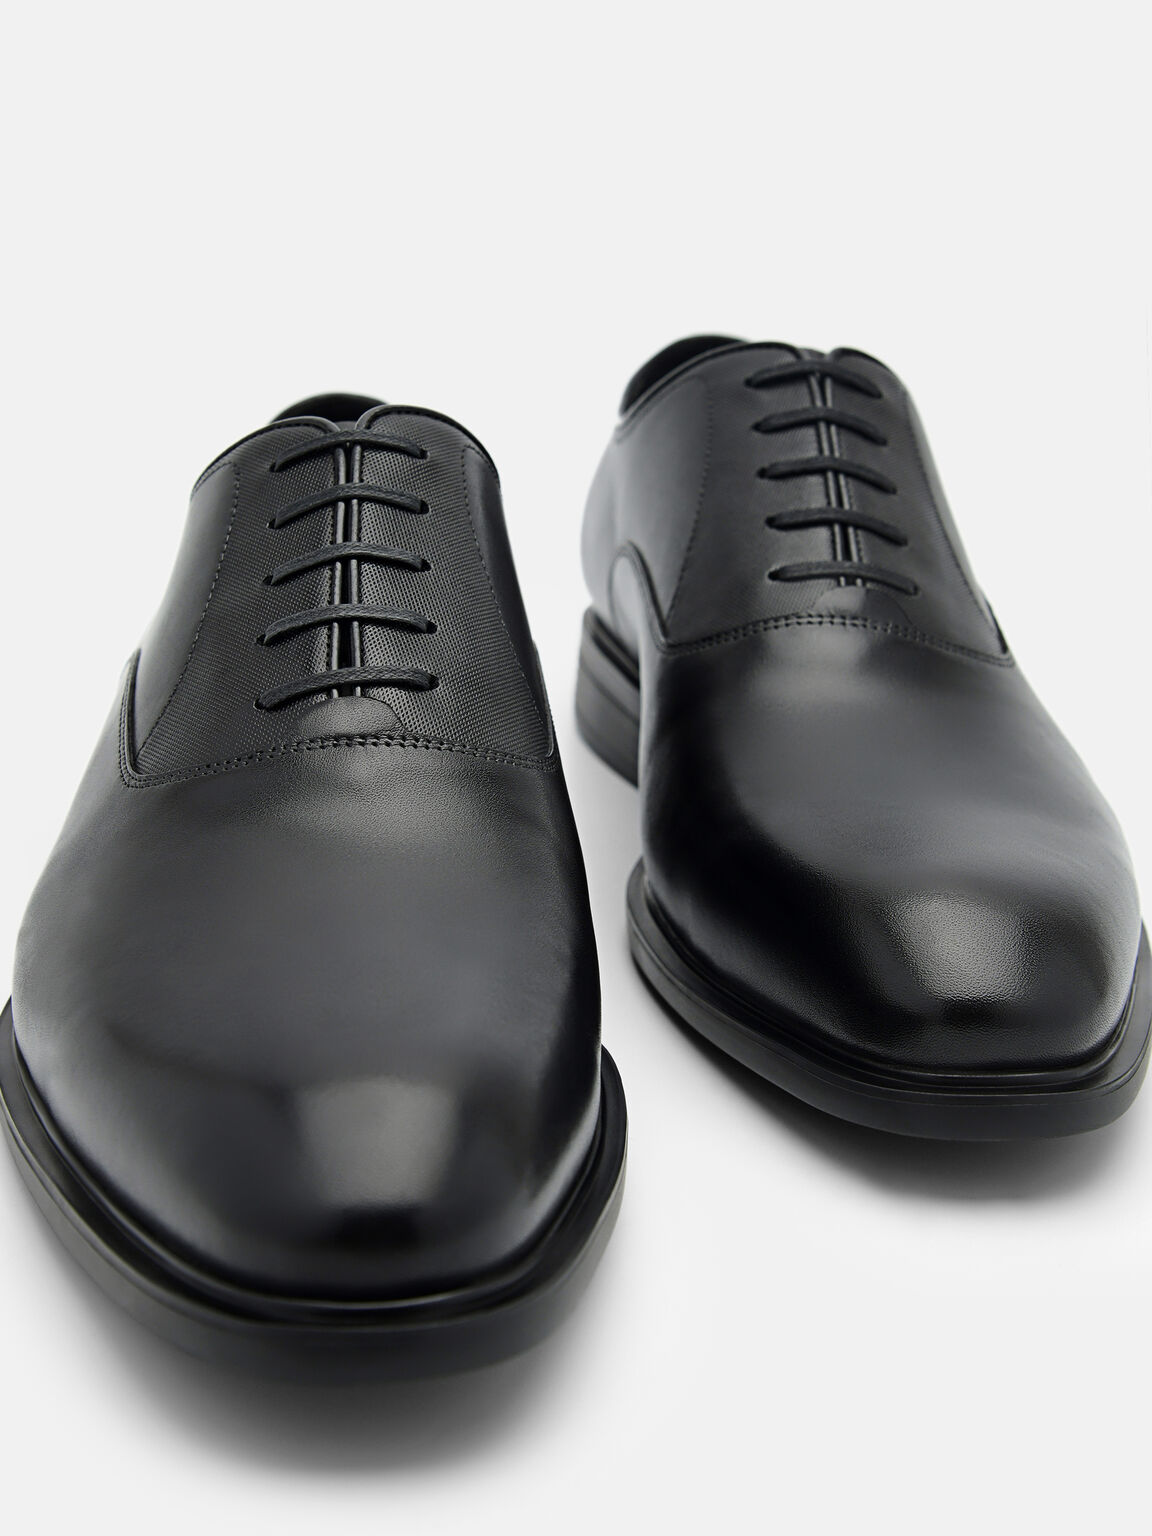 皮革牛津鞋, 黑色